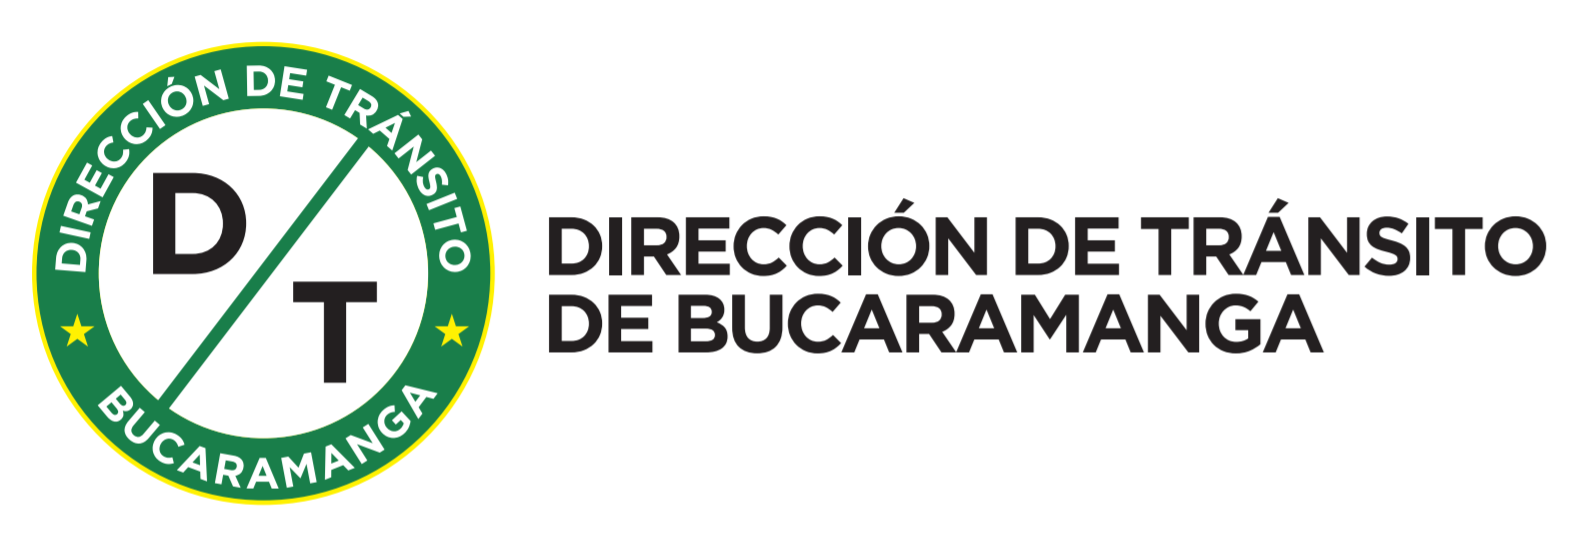 Dirección de Tránsito de Bucaramanga - DTB